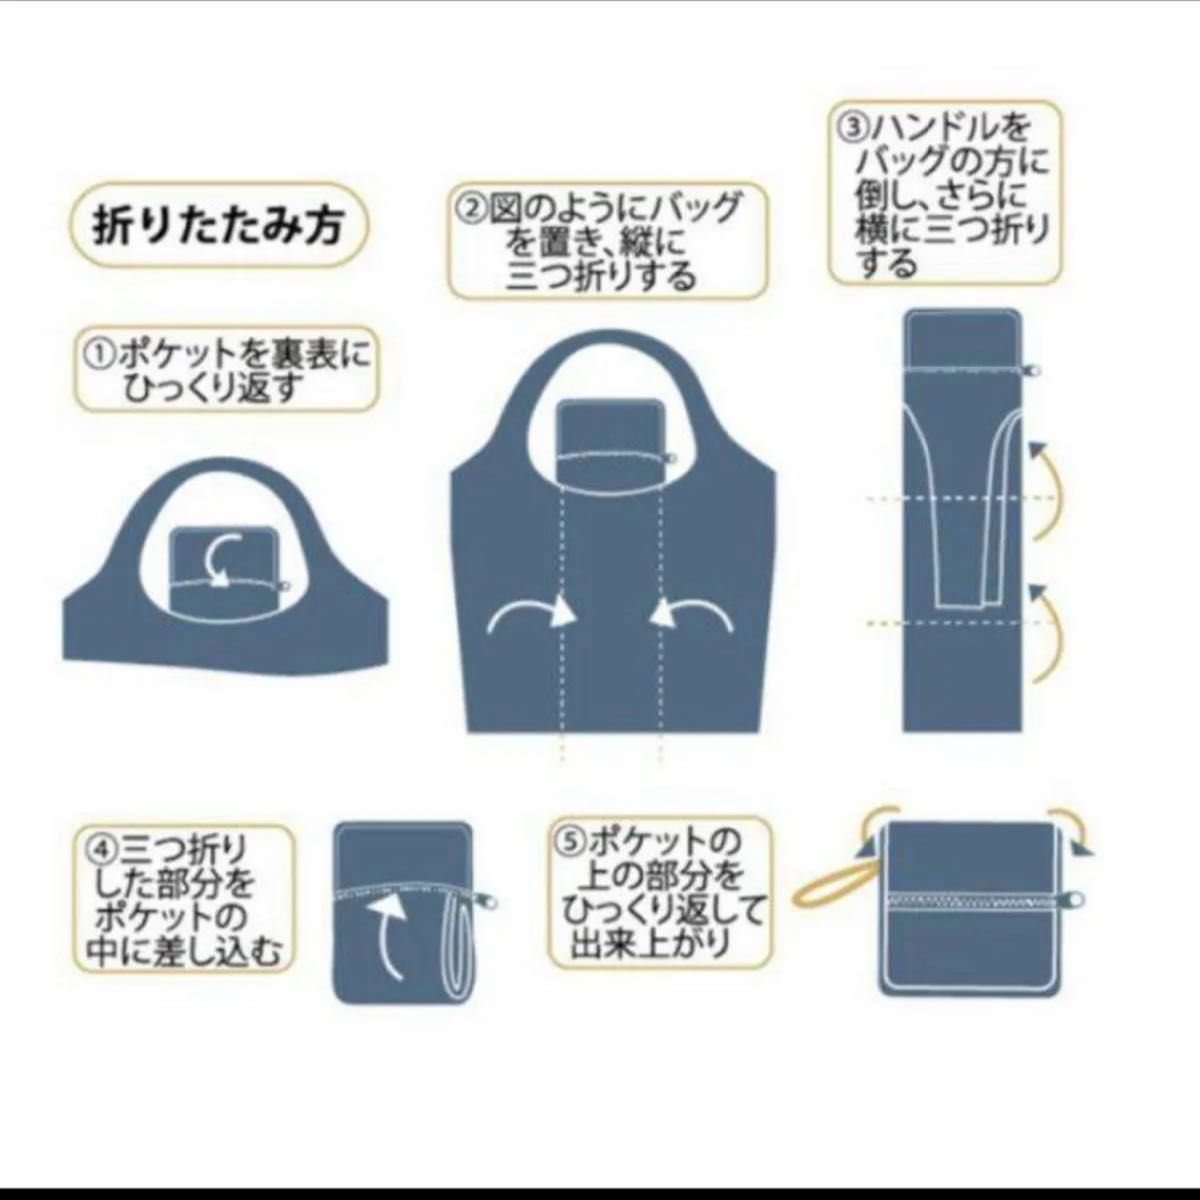 東京の名所の地図のエコバッグ